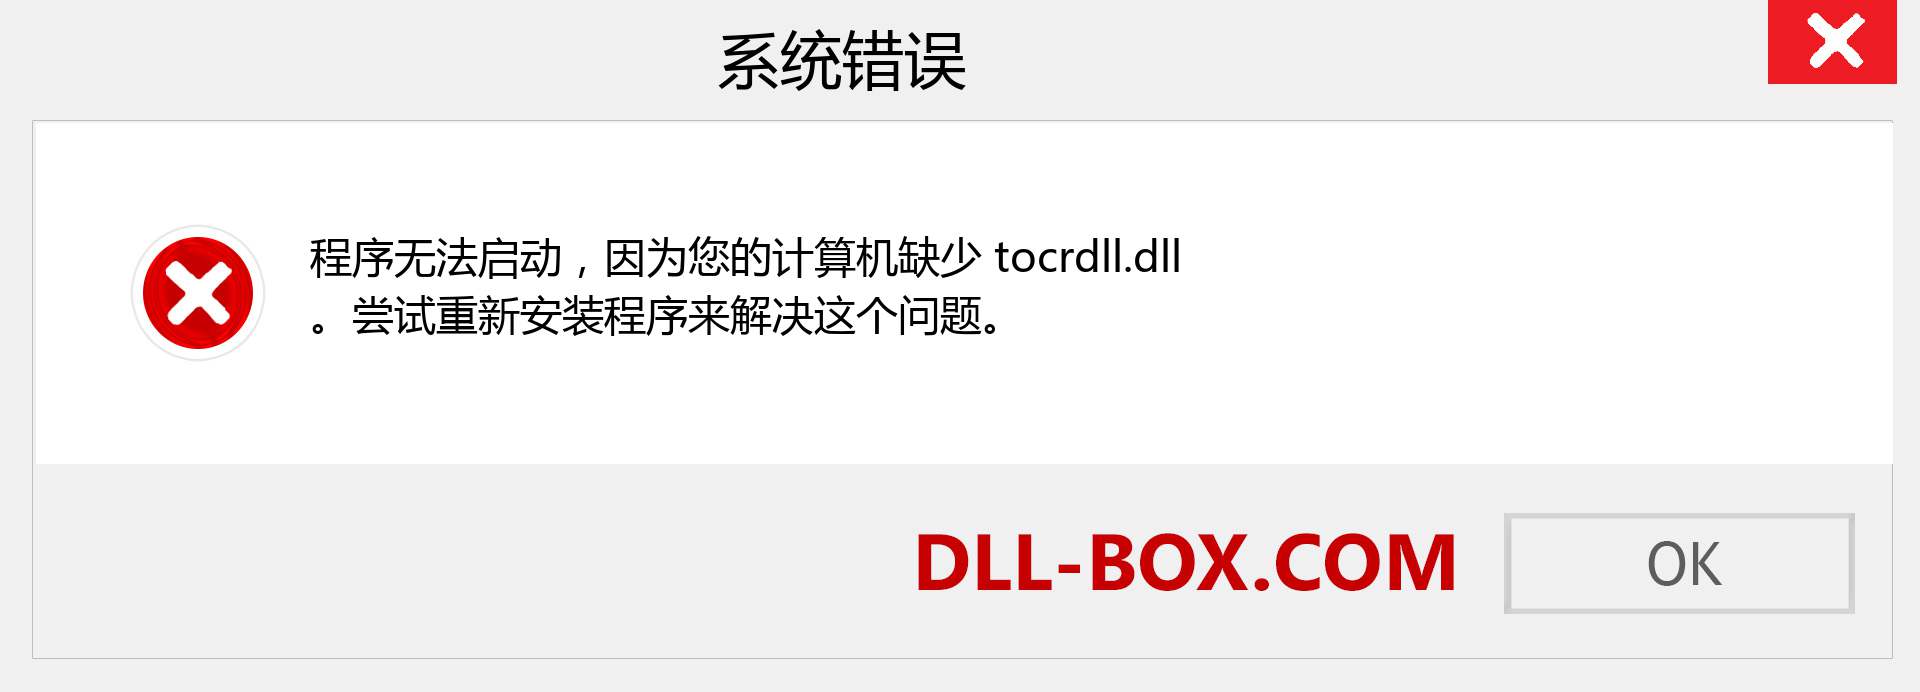 tocrdll.dll 文件丢失？。 适用于 Windows 7、8、10 的下载 - 修复 Windows、照片、图像上的 tocrdll dll 丢失错误